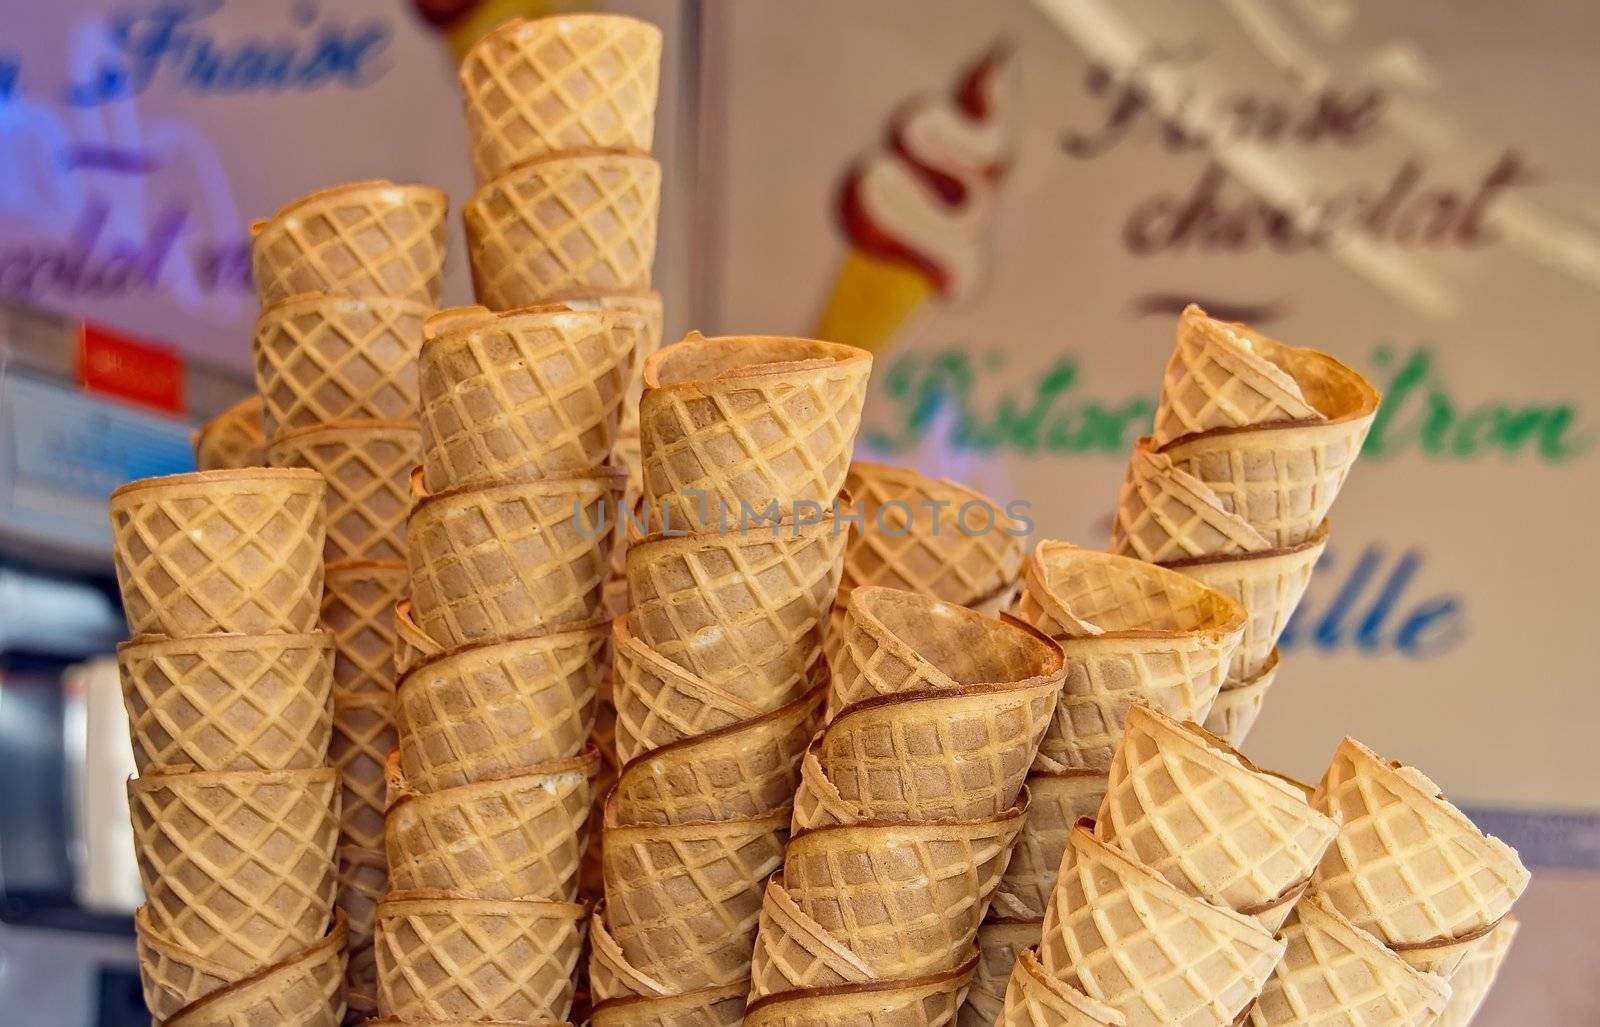 ice cream cones by neko92vl